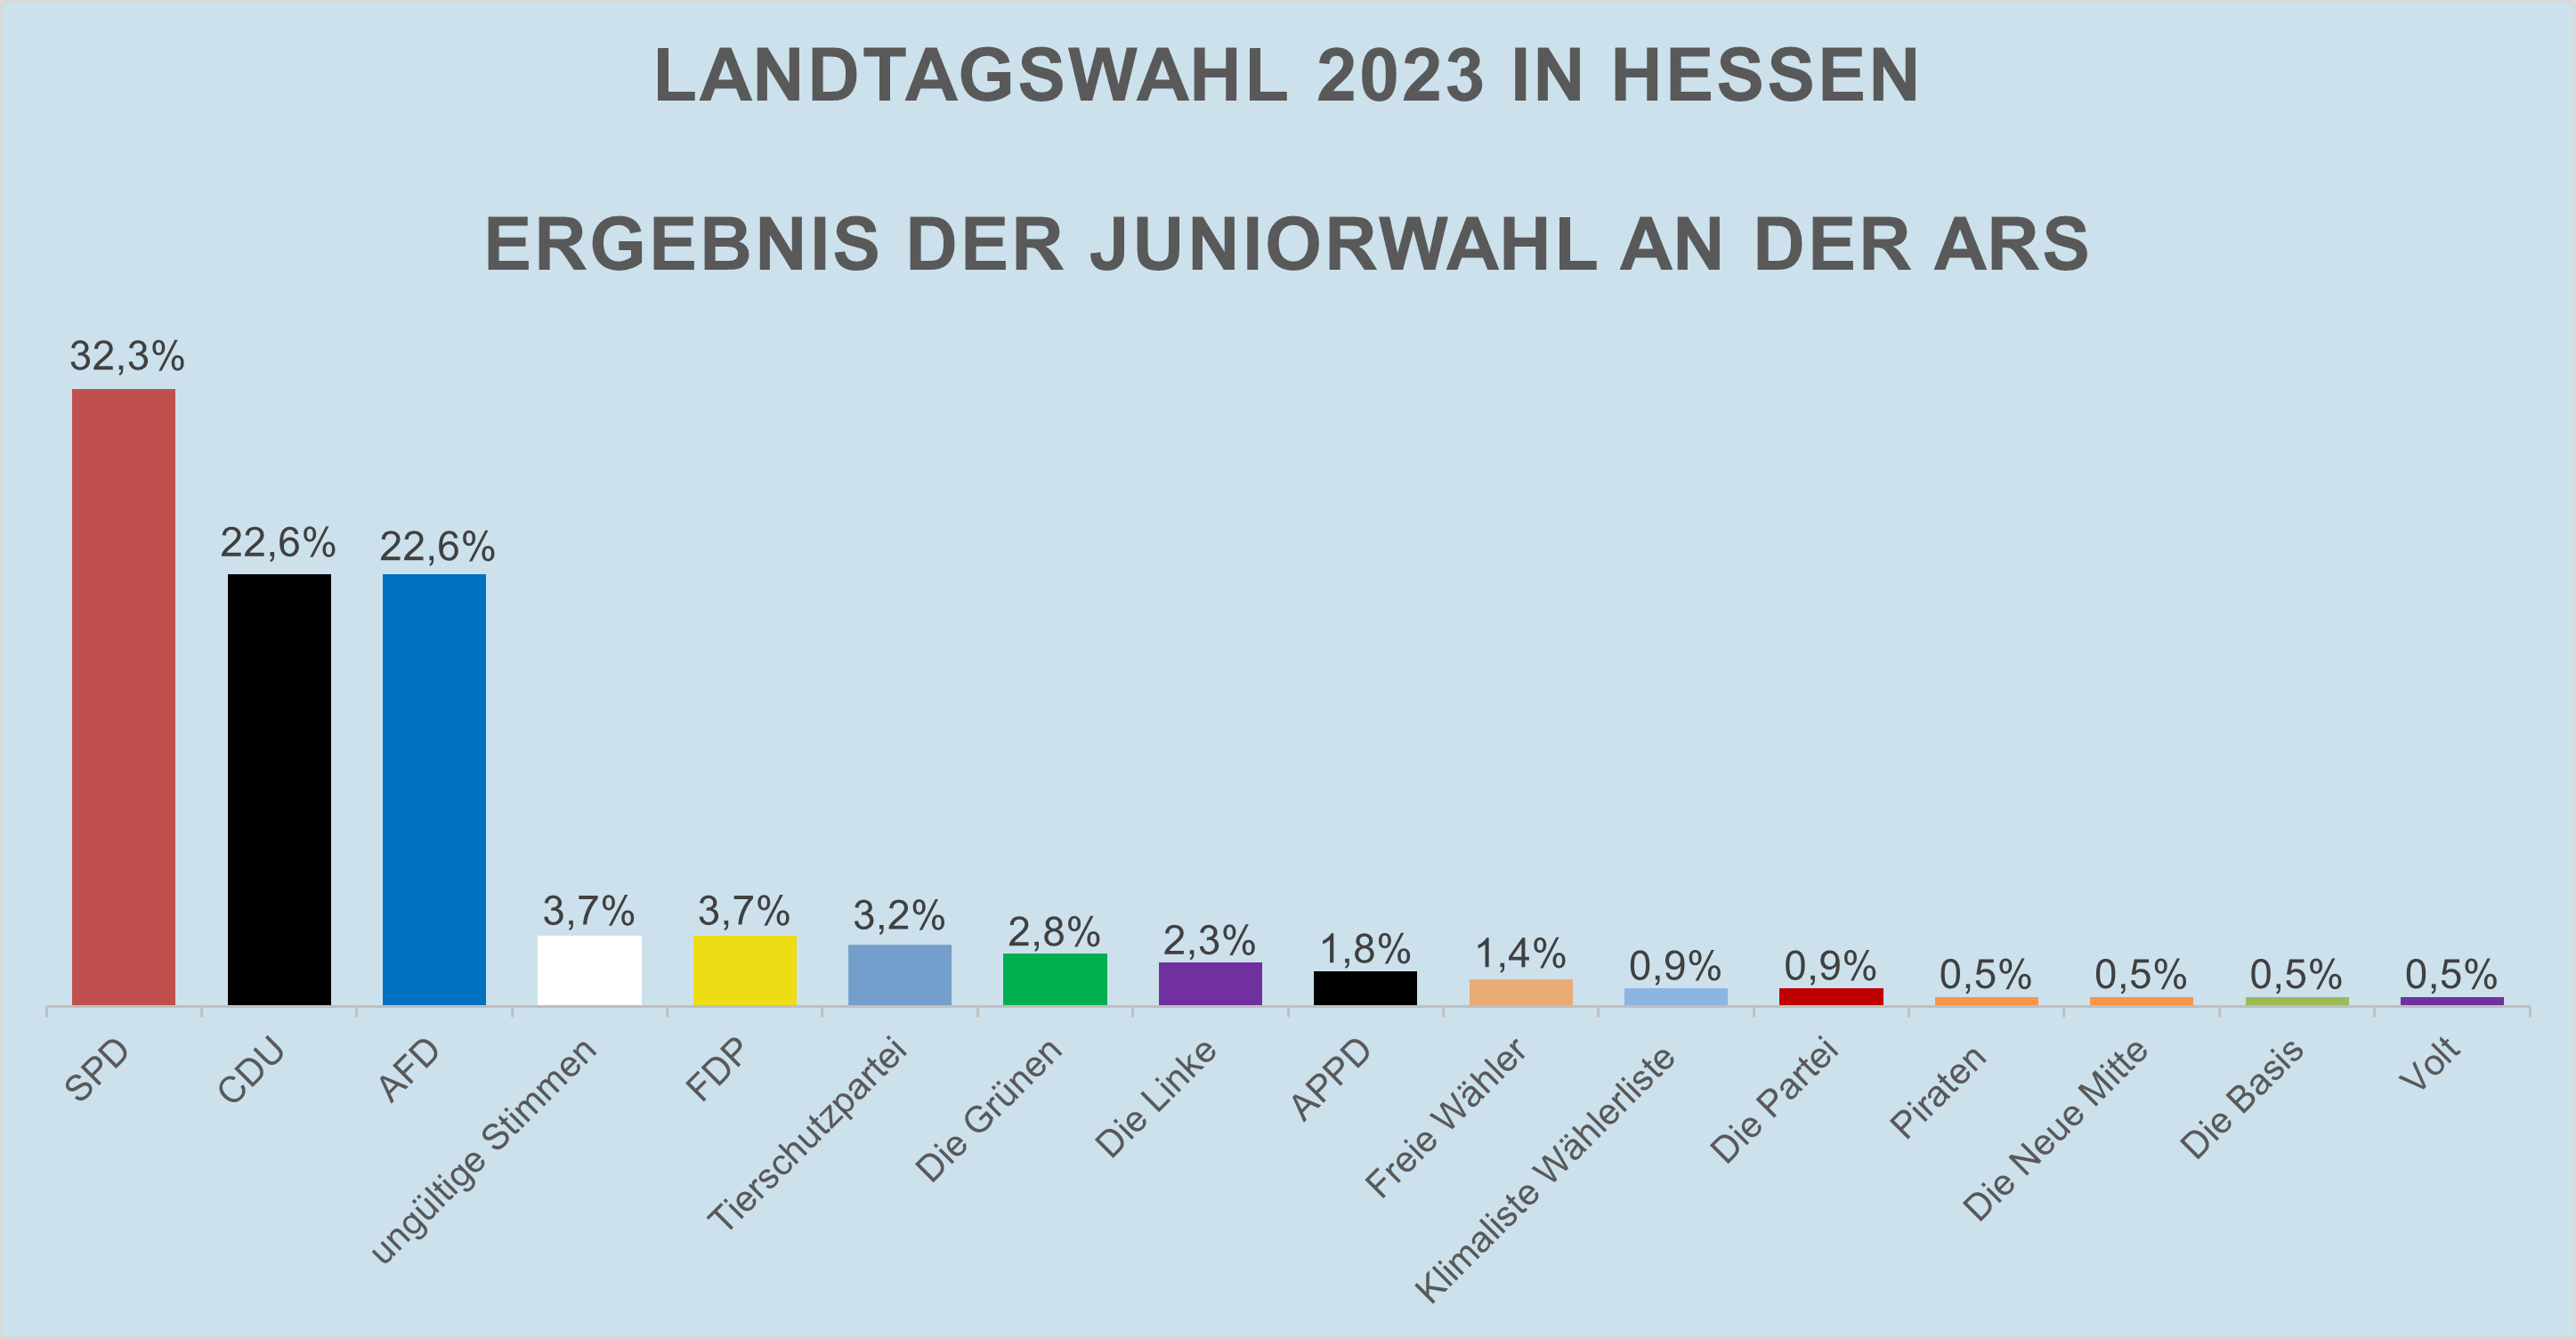 Ergebnisse der Juniorwahl 2023